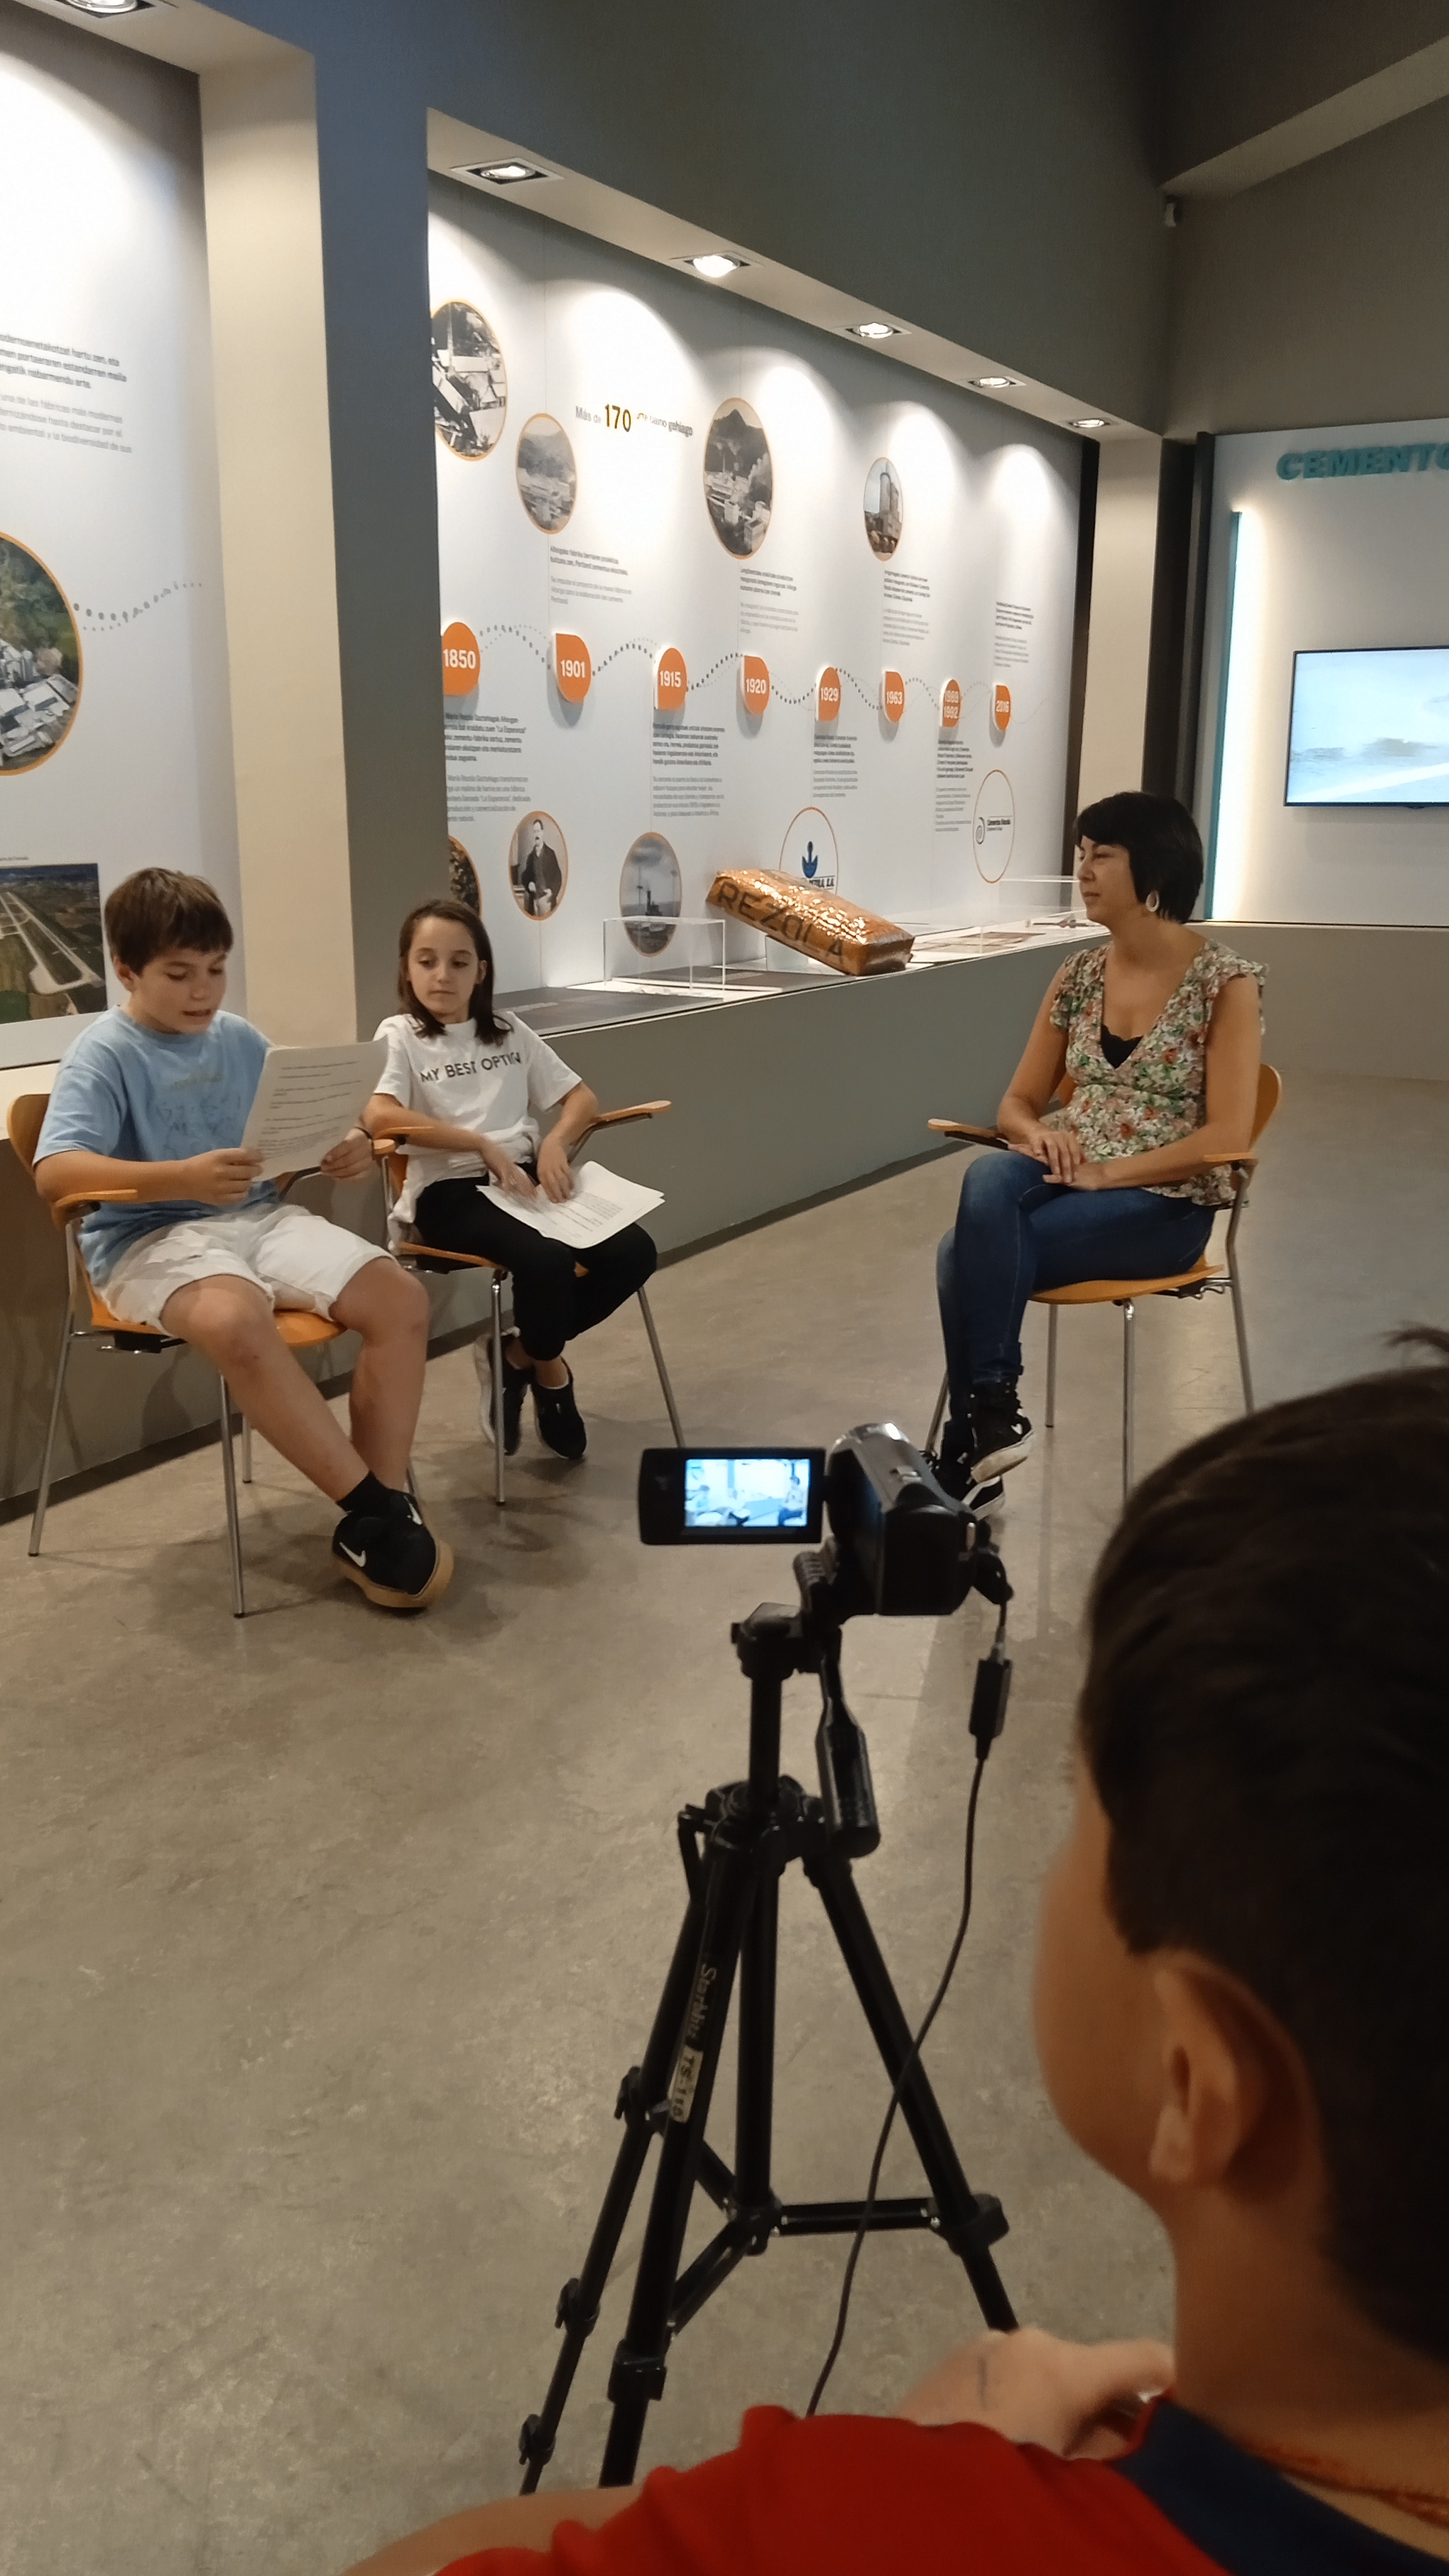 Imagen de una cámara de video y unos jóvenes sentados en una aula.